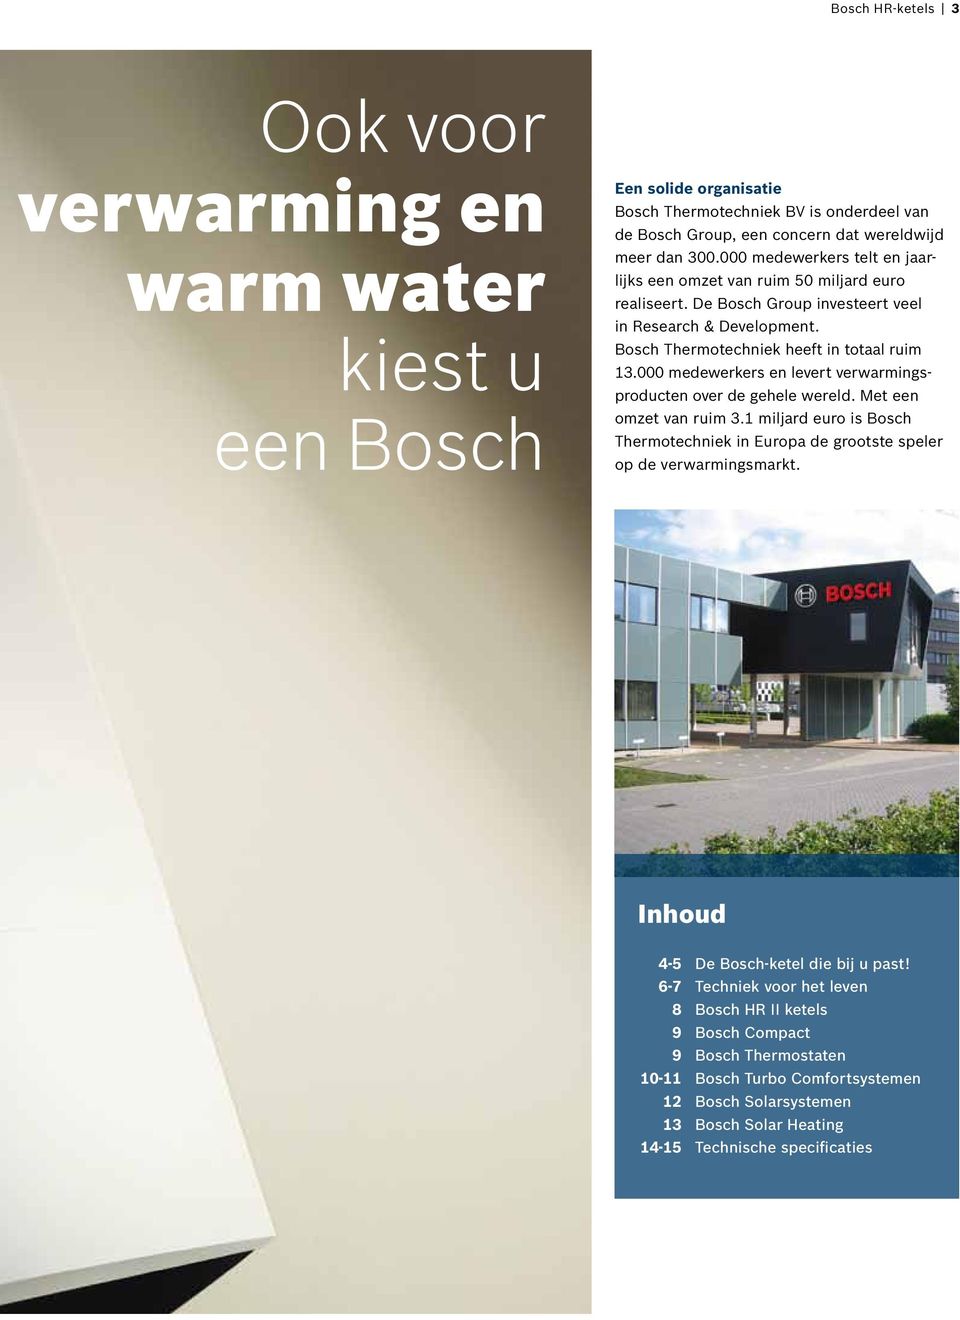 000 medewerkers en levert verwarmingsproducten over de gehele wereld. Met een omzet van ruim 3.1 miljard euro is Bosch Thermotechniek in Europa de grootste speler op de verwarmingsmarkt.